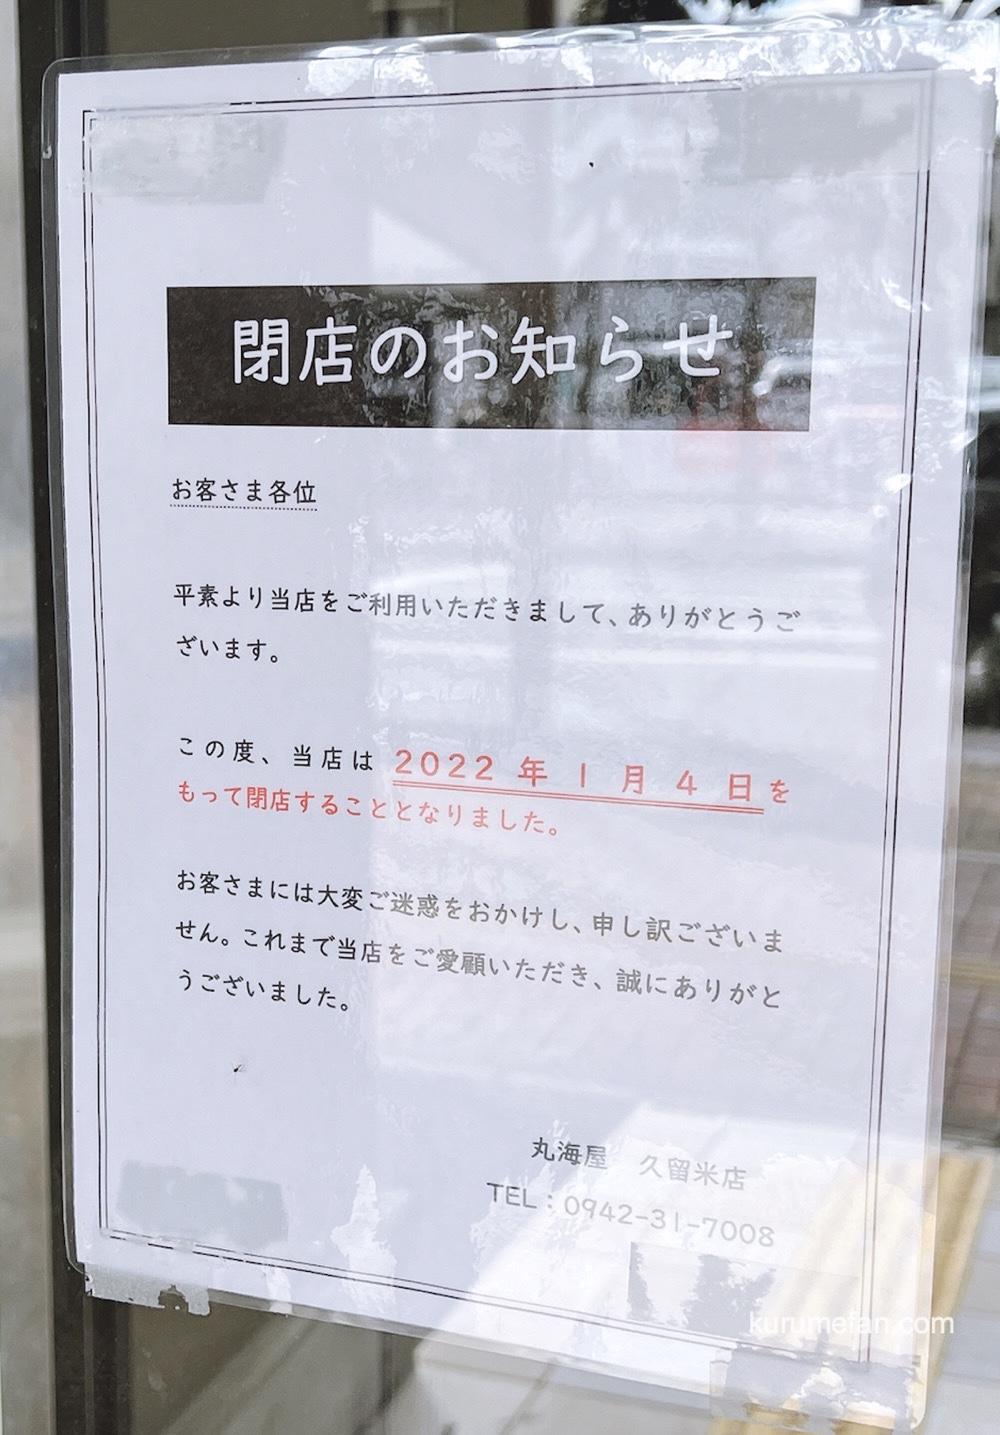 丸海屋 久留米店 閉店のお知らせ